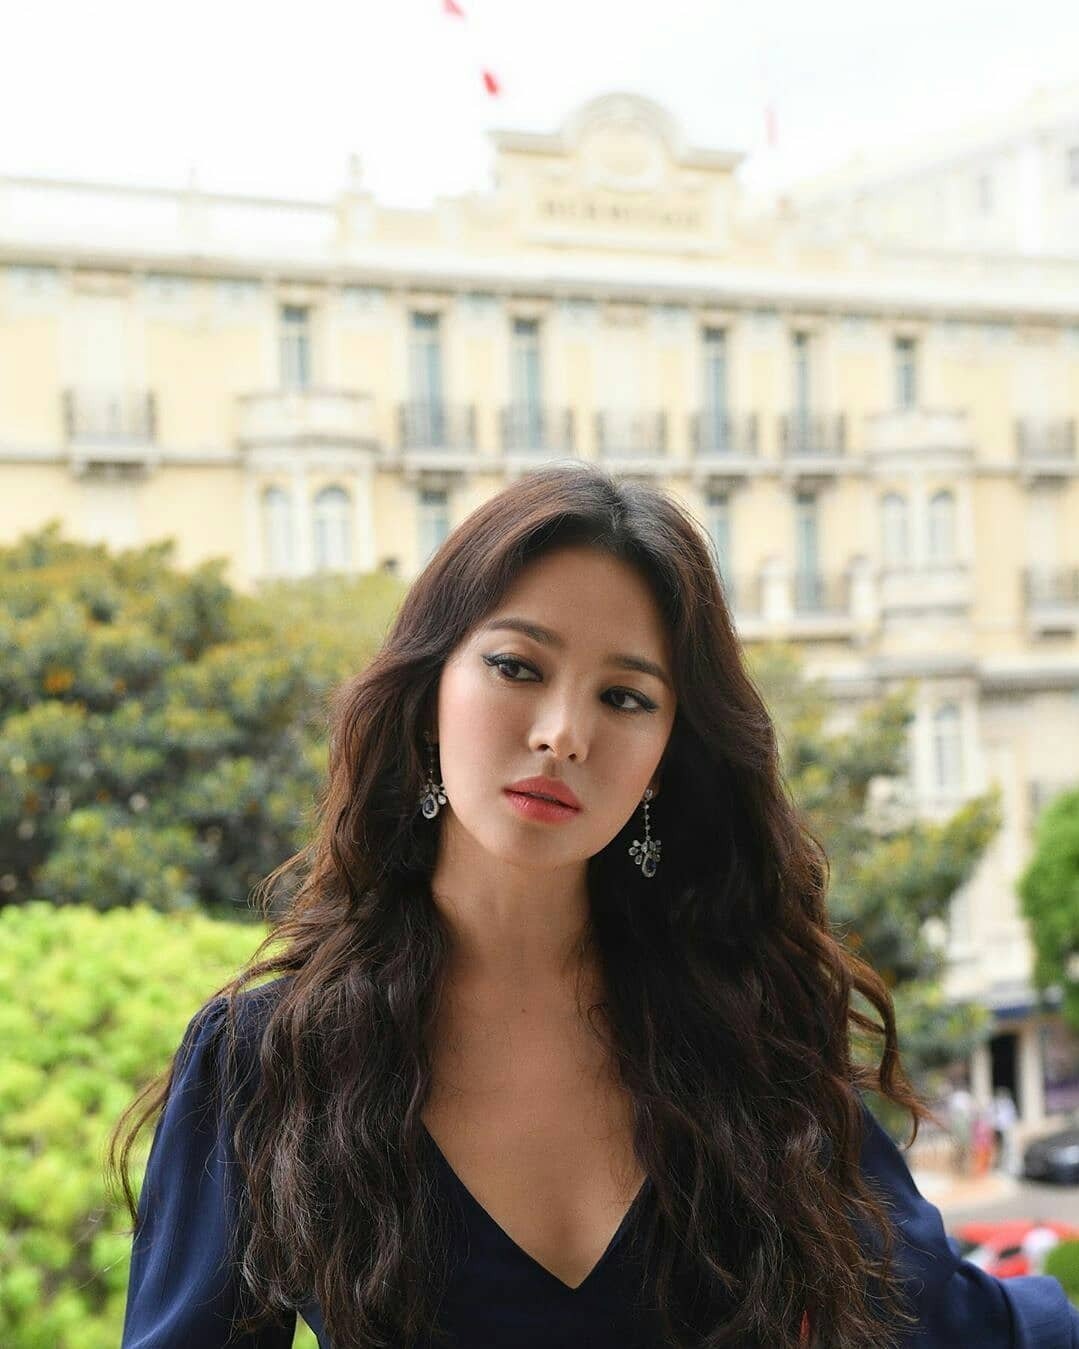 Khác với phong cách trang điểm có mà như không trước đây, Song Hye Kyo thay đổi style trang điểm đậm, sắc sảo với mắt khói và mái tóc dài xoăn nhẹ.